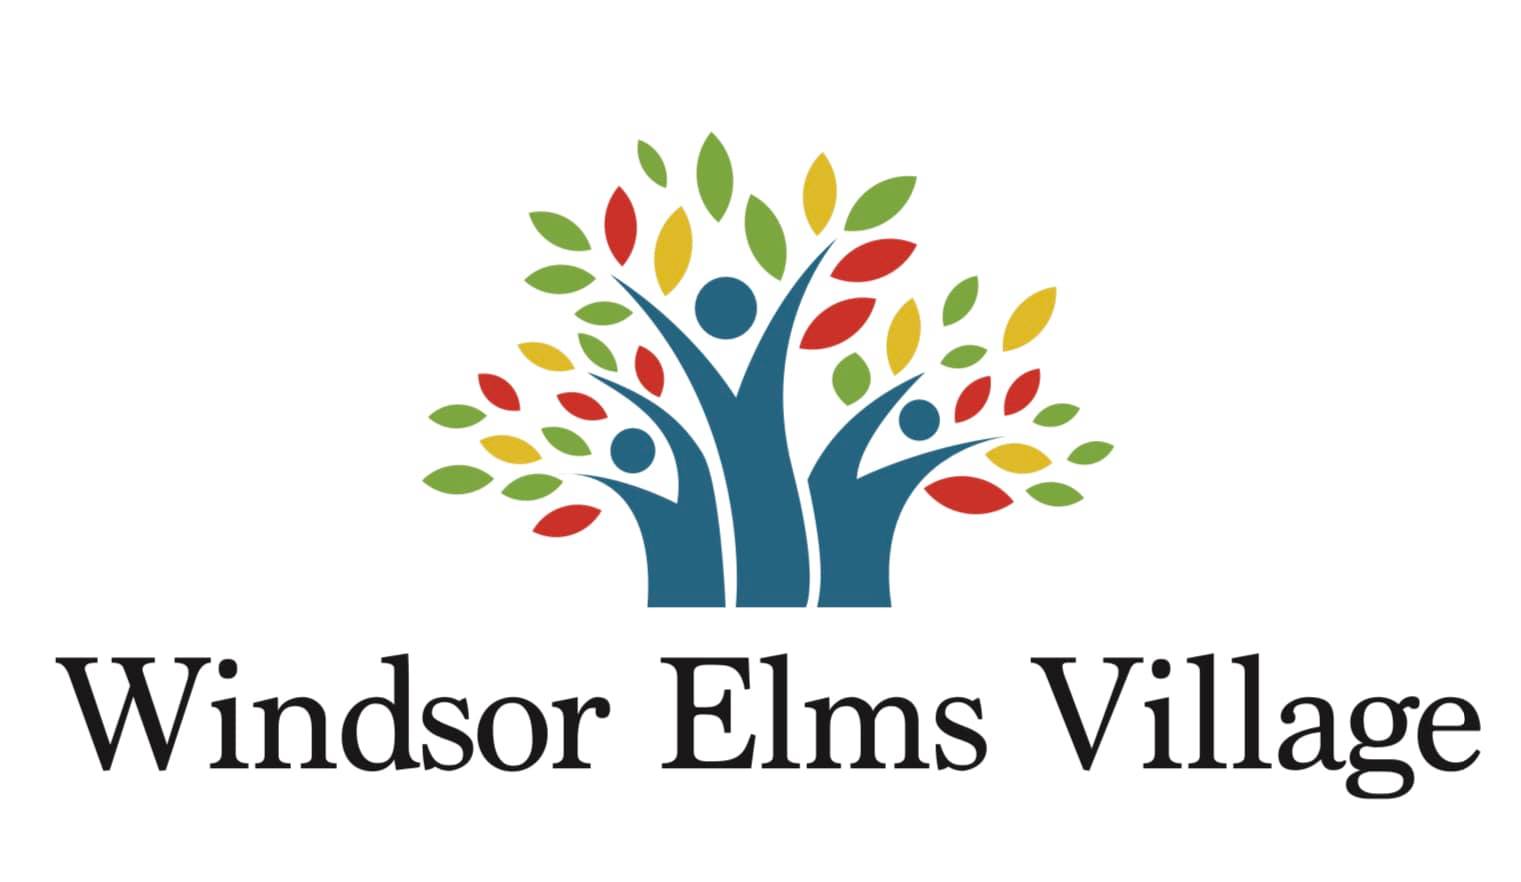 Windsor Elms Village